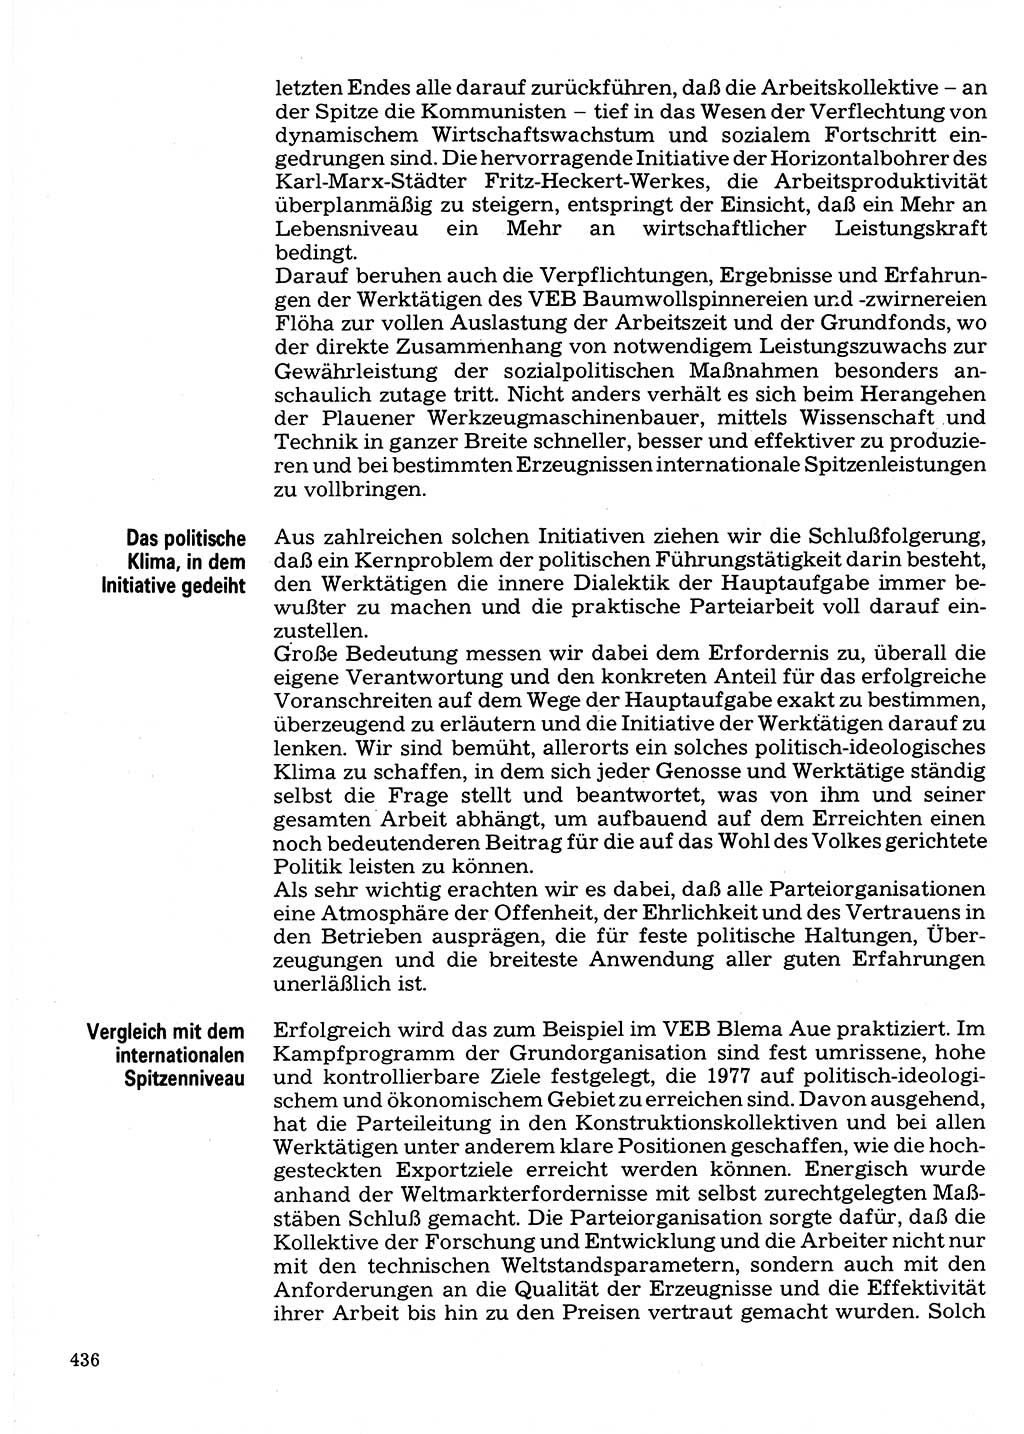 Neuer Weg (NW), Organ des Zentralkomitees (ZK) der SED (Sozialistische Einheitspartei Deutschlands) für Fragen des Parteilebens, 32. Jahrgang [Deutsche Demokratische Republik (DDR)] 1977, Seite 436 (NW ZK SED DDR 1977, S. 436)